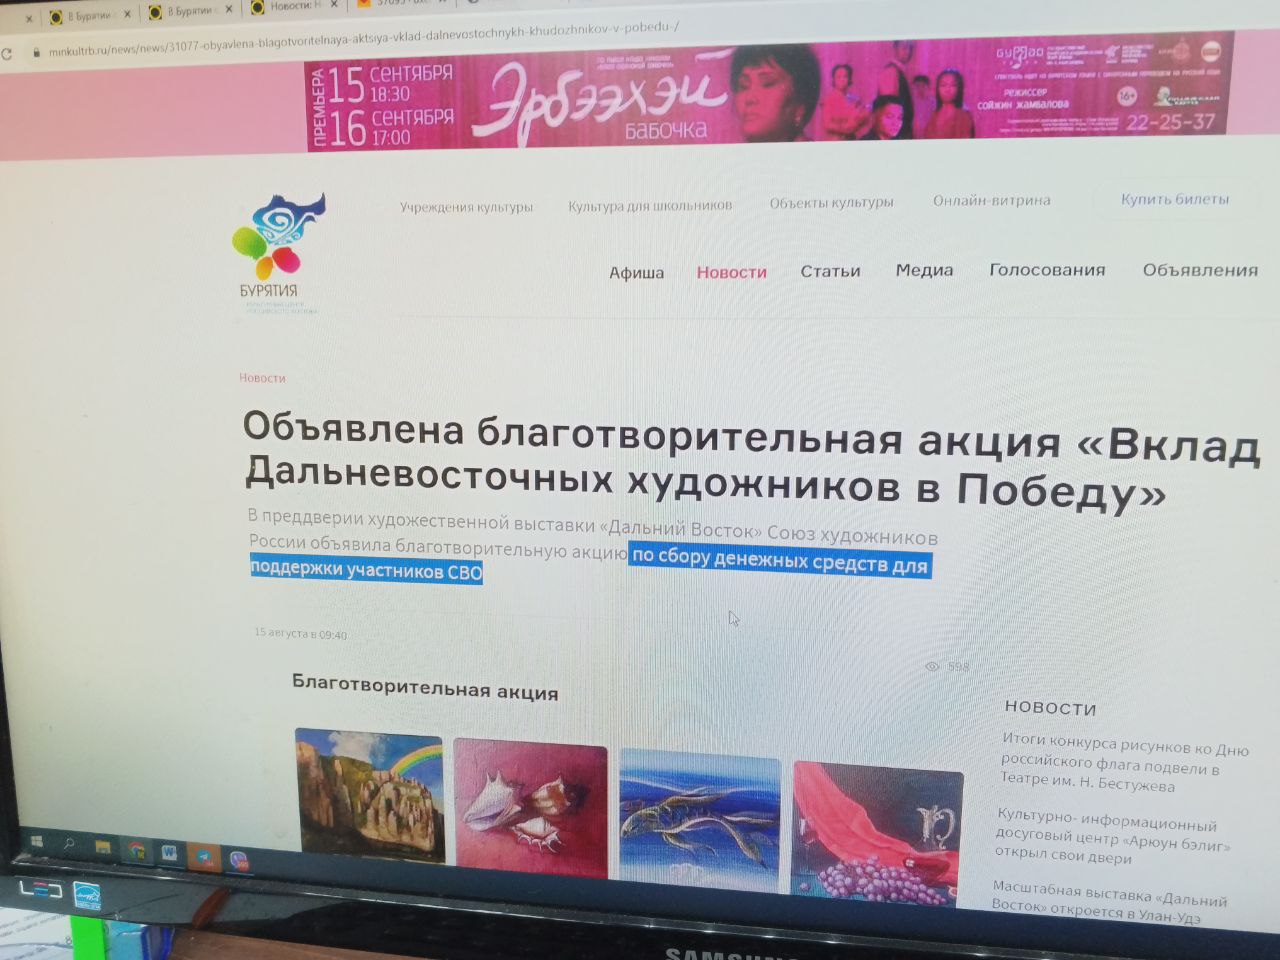 Фото В Улан-Удэ Союз художников России объявил благотворительную акцию